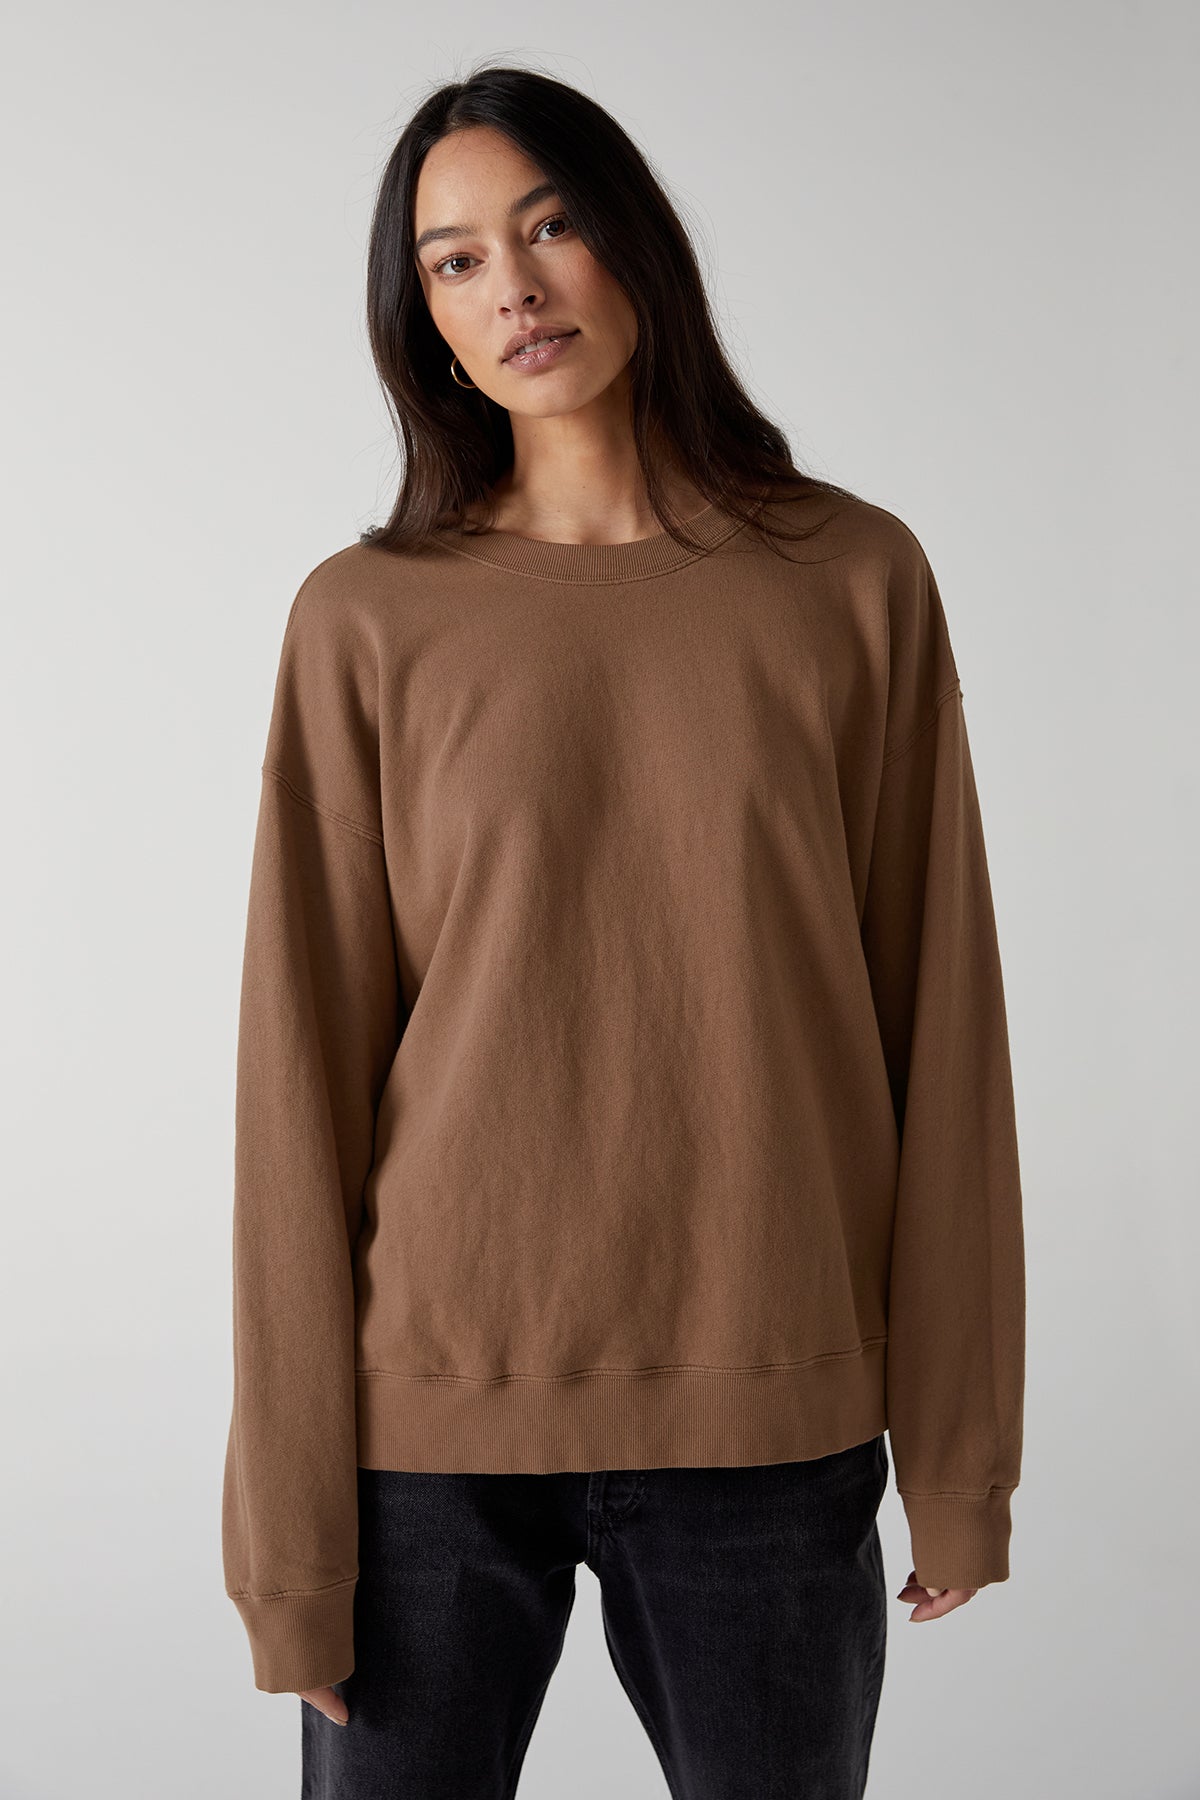   Abbot Sweatshirt in hazelnut organic fleece front 